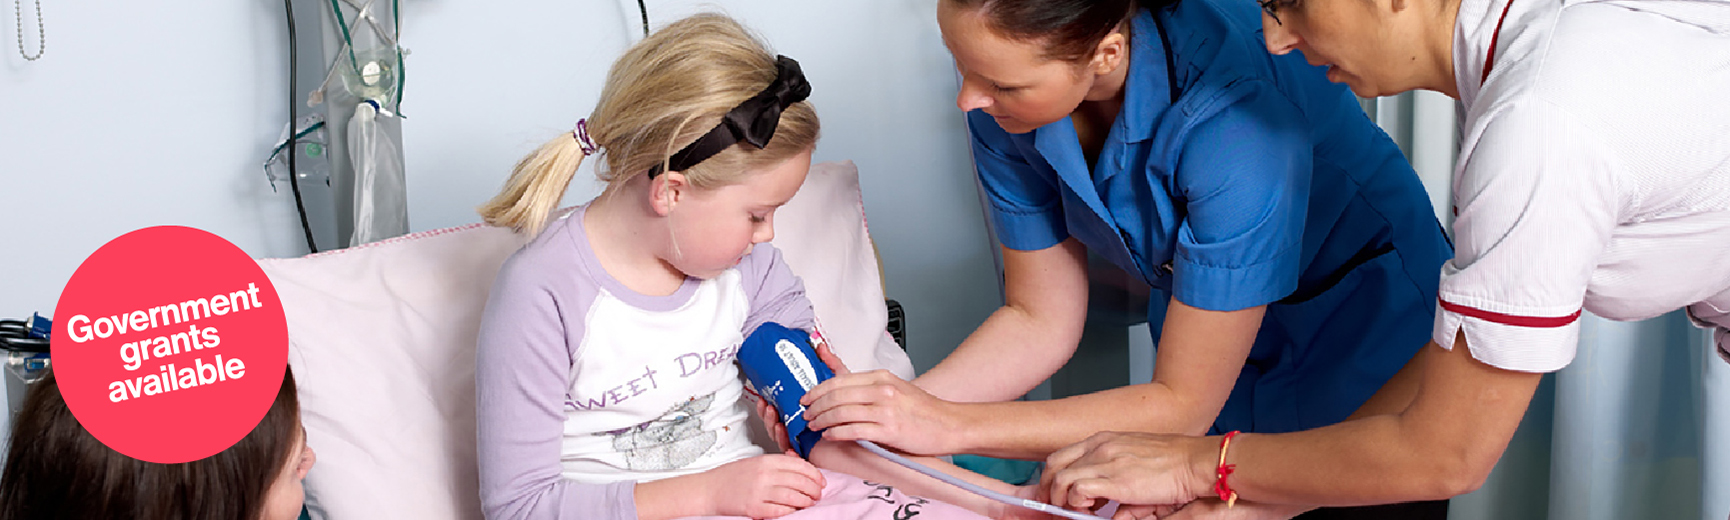 nurse checking child's blood pressure